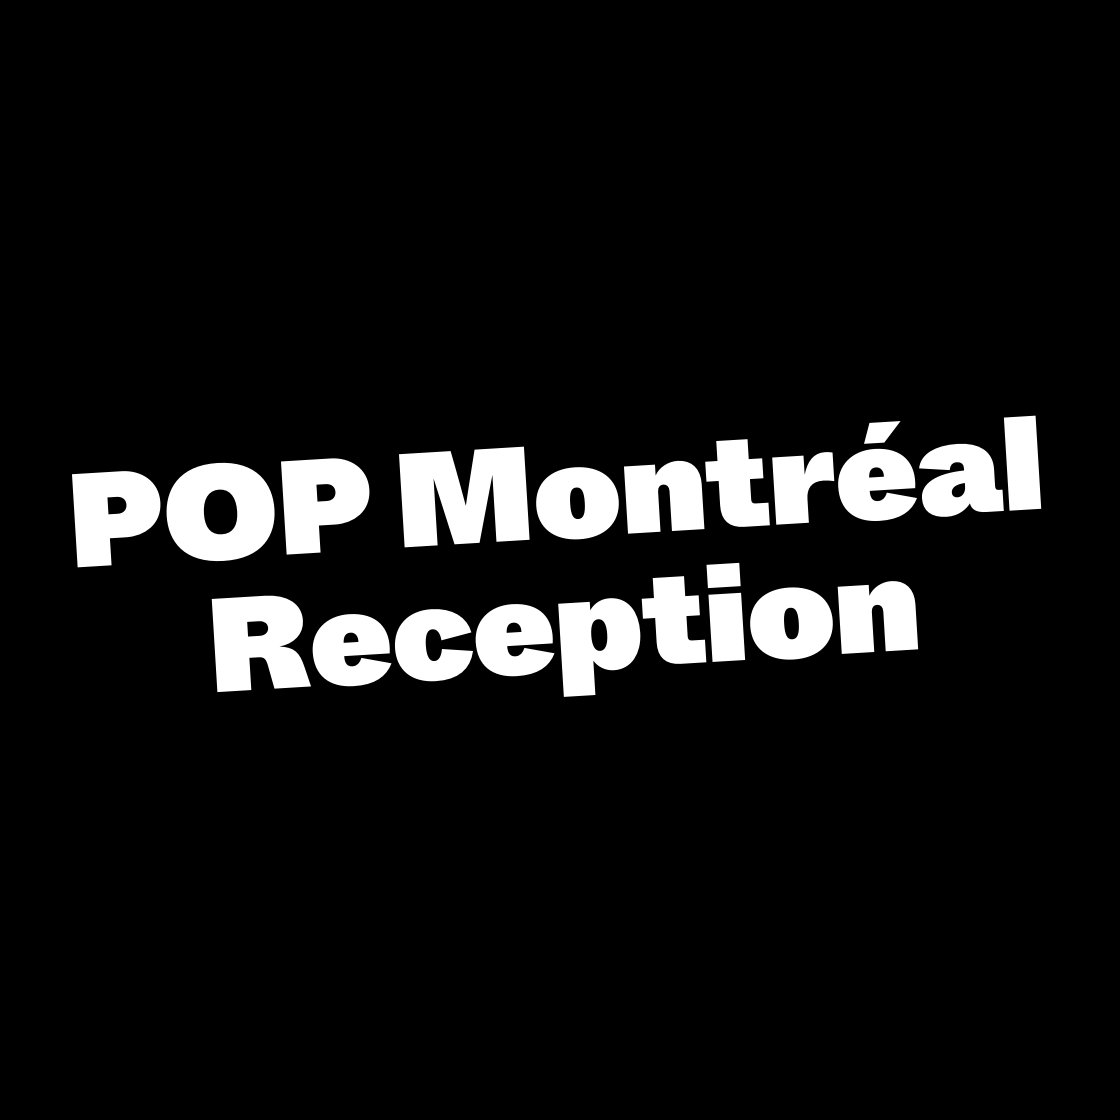 POP Montréal Reception